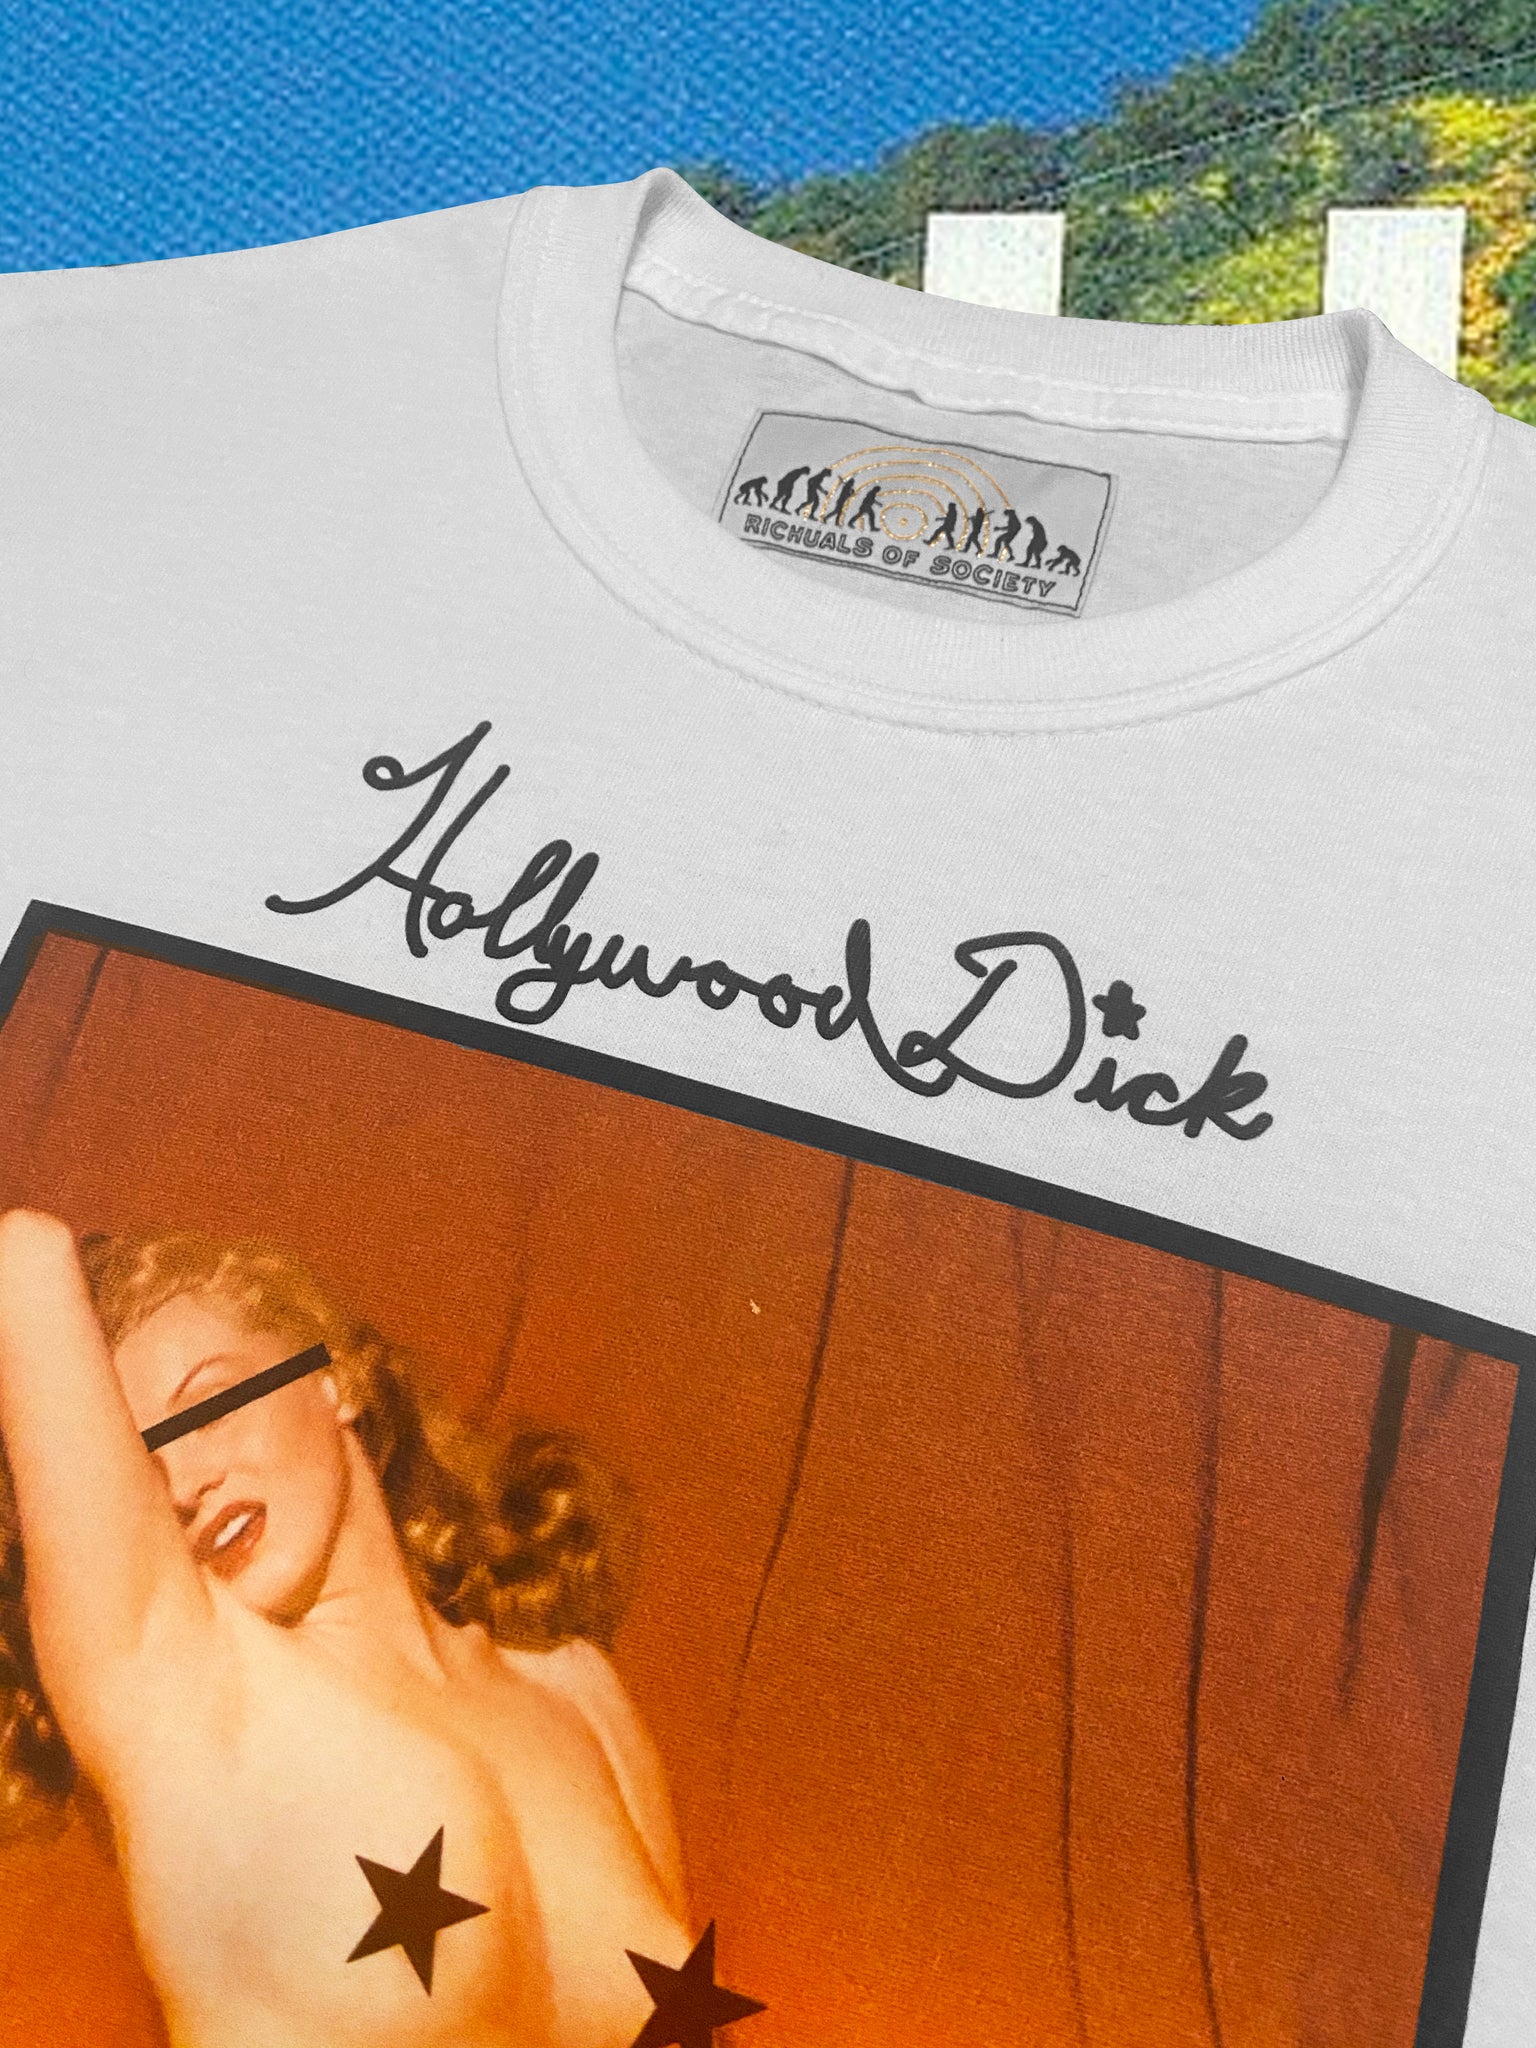 Hollywood Dick - Pillz Shirt